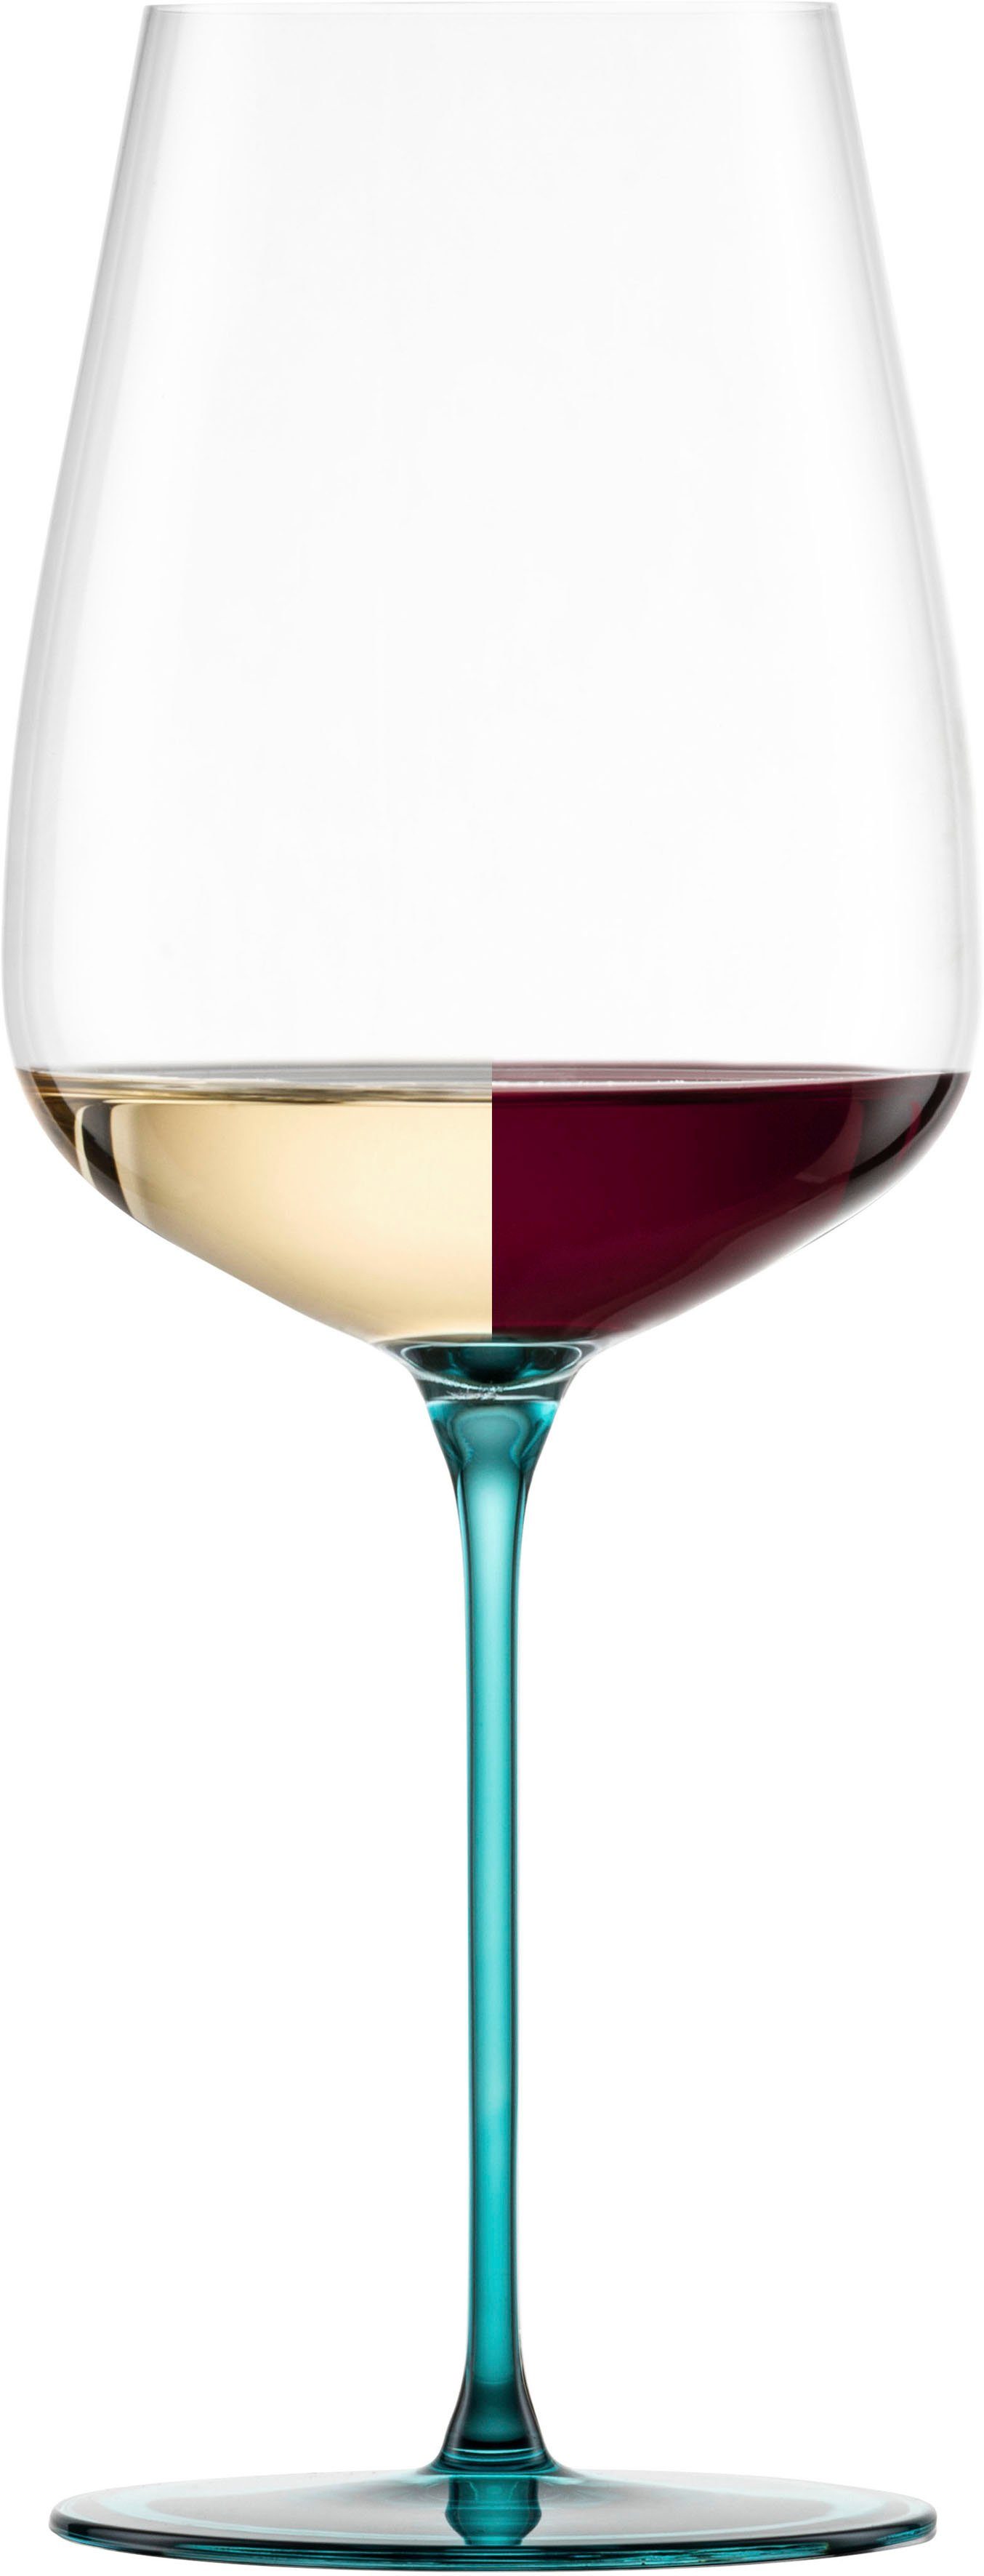 Eisch Weinglas INSPIRE SENSISPLUS, Made in Germany, Kristallglas,  Veredelung der farbigen Stiele in Handarbeit, 2-teilig